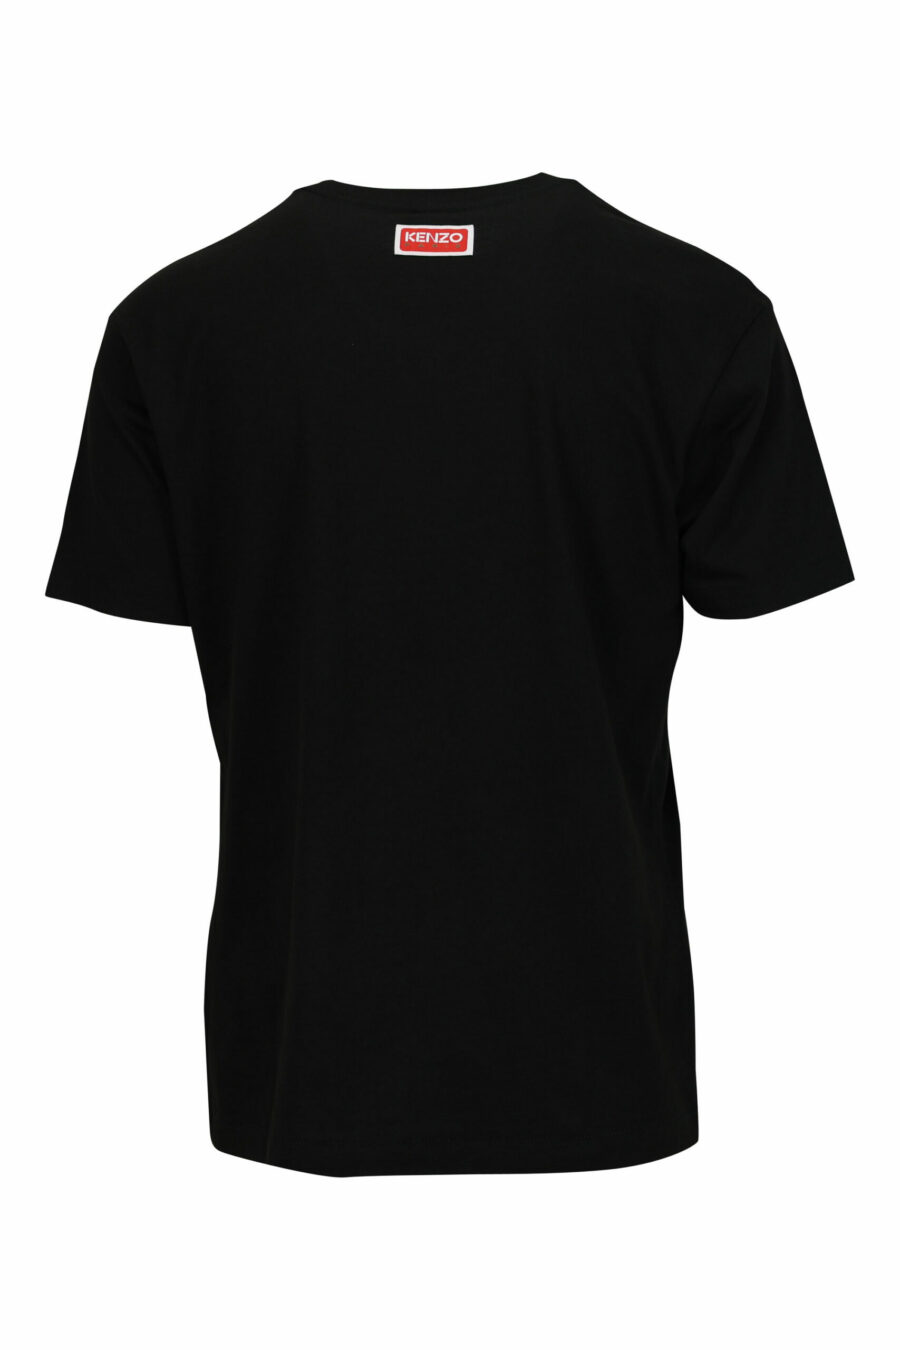 Schwarzes T-Shirt in Übergröße mit großem, geprägtem Elefanten-Logo - 3612230568839 1 skaliert